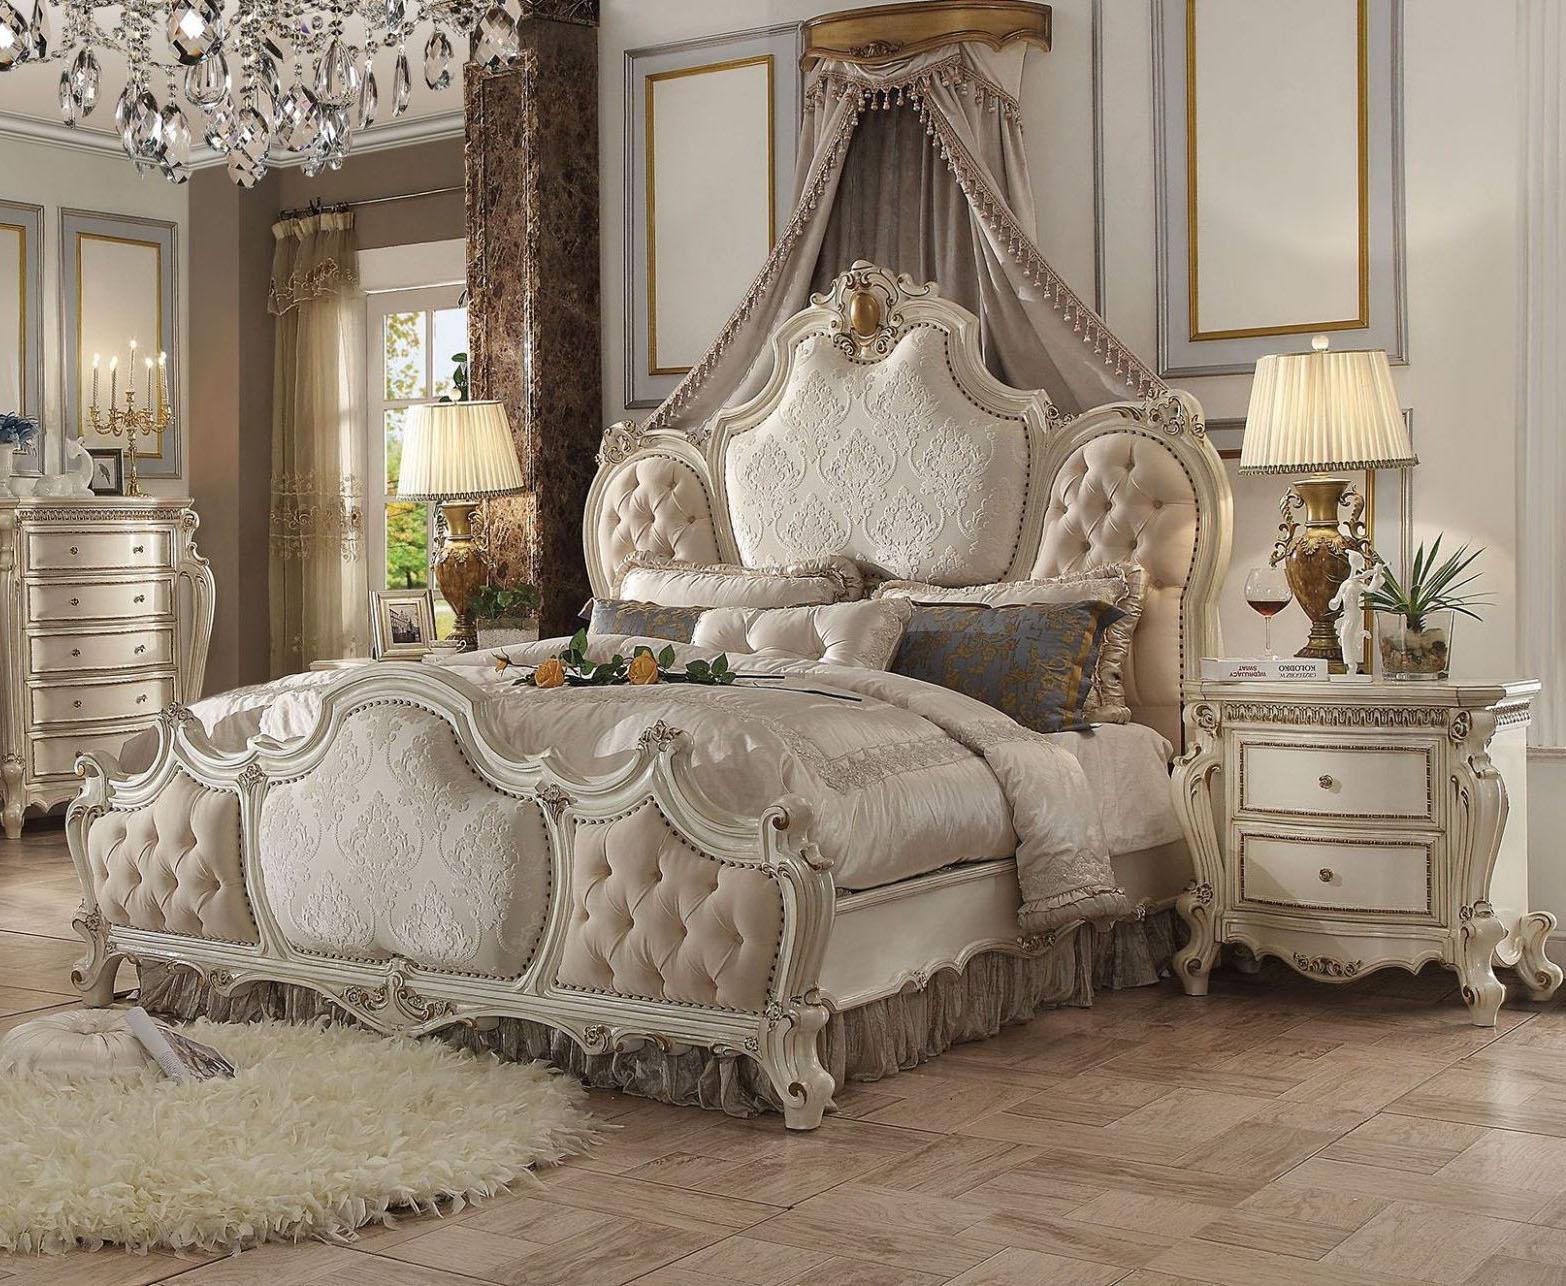 

    
Vestavia Antique Pearl King Upholstered Standard Bedroom Set 3 Pcs Classic
